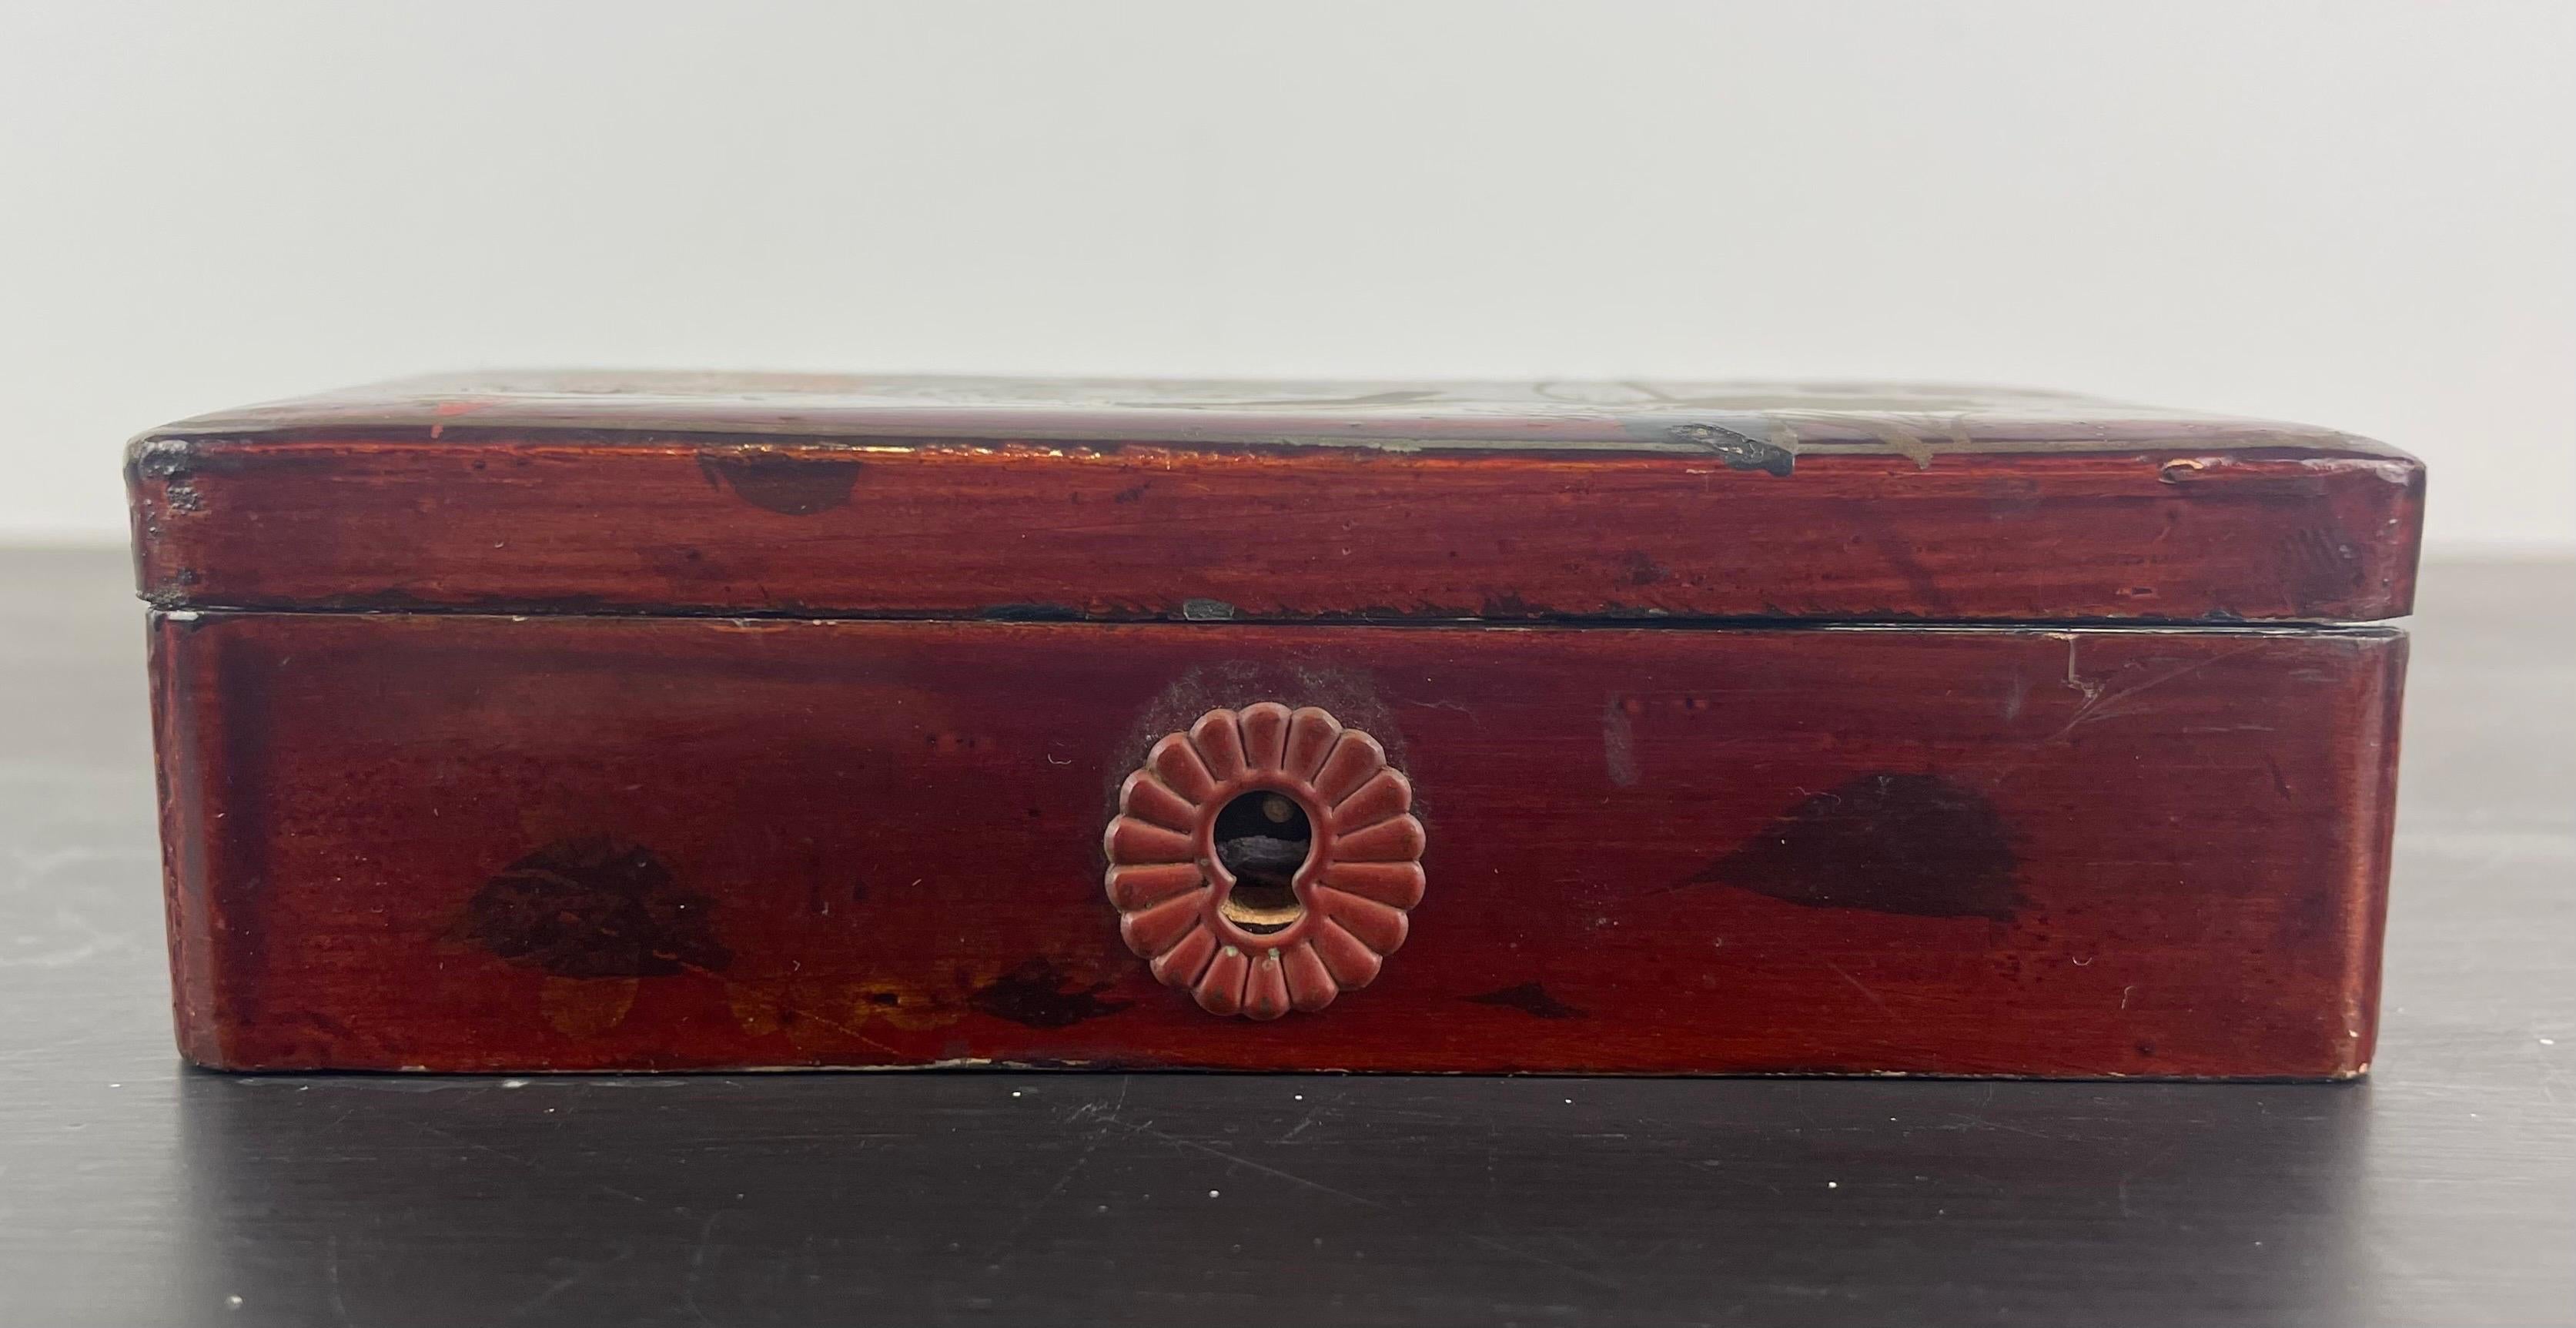 Jolie boîte japonaise laquée décorée d'oiseaux et de feuillages.
signé 
Laqué à l'intérieur et à l'extérieur
Fin du 19e siècle
Sans clé
Belle serrure
Idéal pour ranger les bijoux.